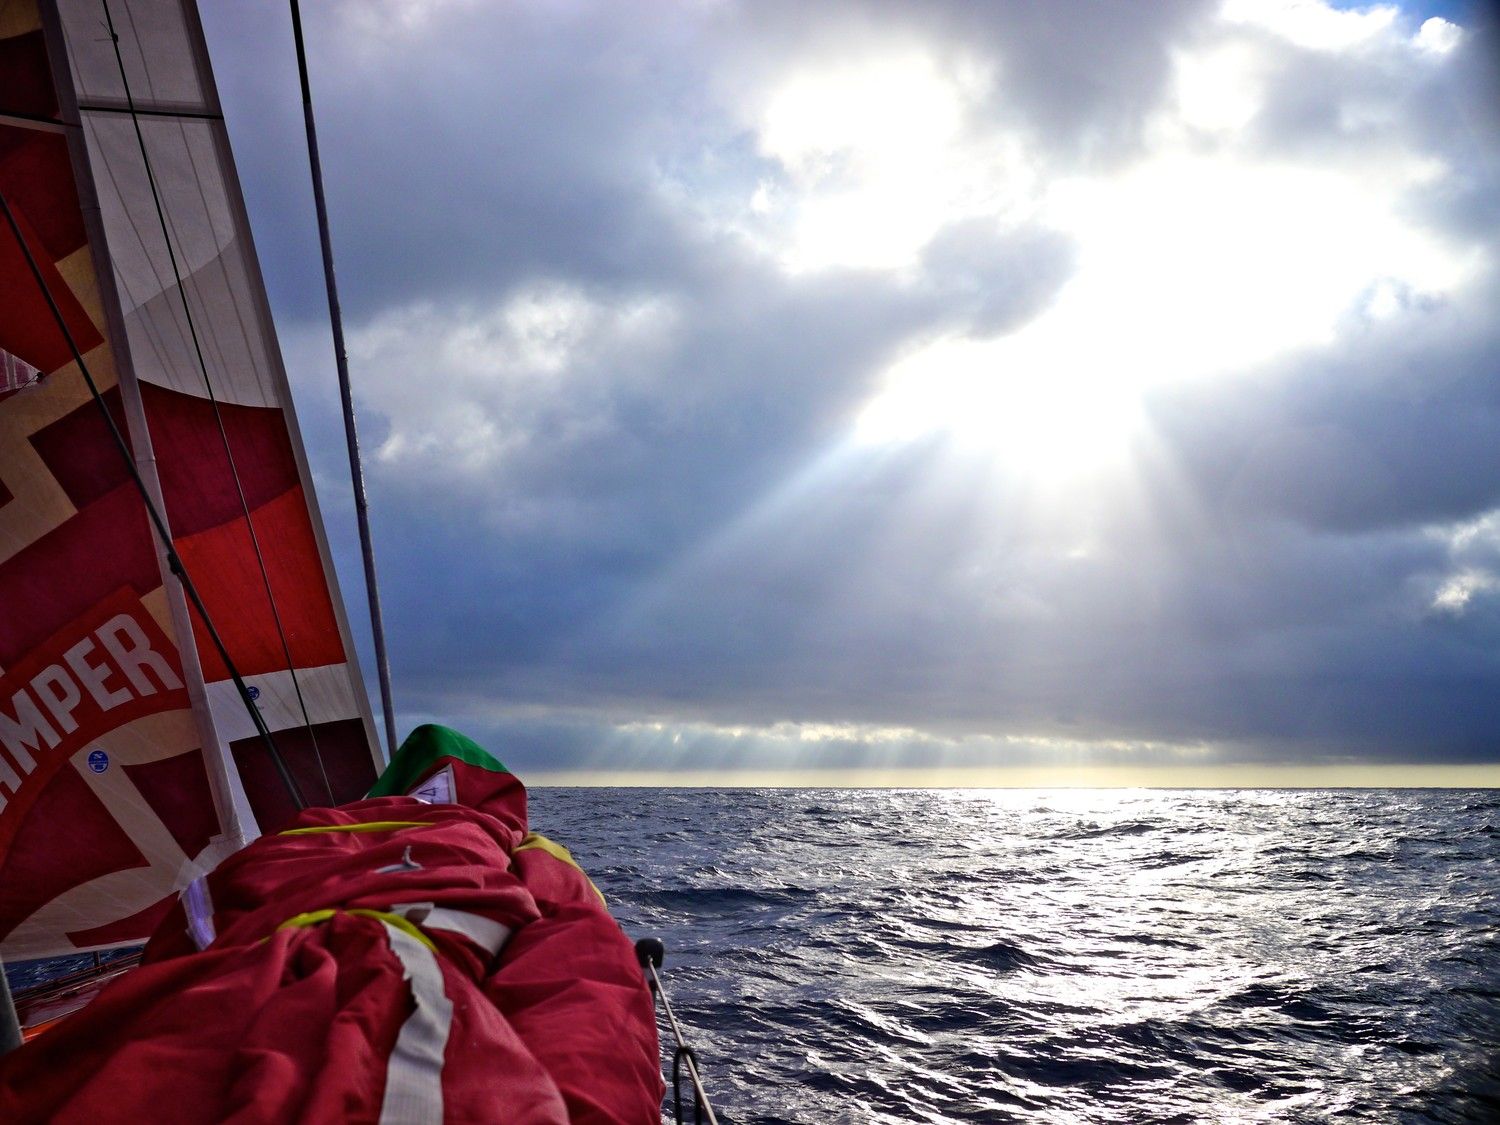 Für Camper geht die Sonne auf. Die vierte Etappe gelingt den Kiwis bisher ausgezeichnet. Aber im Nacken... © Hamish Hooper/CAMPER ETNZ/Volvo Ocean Race